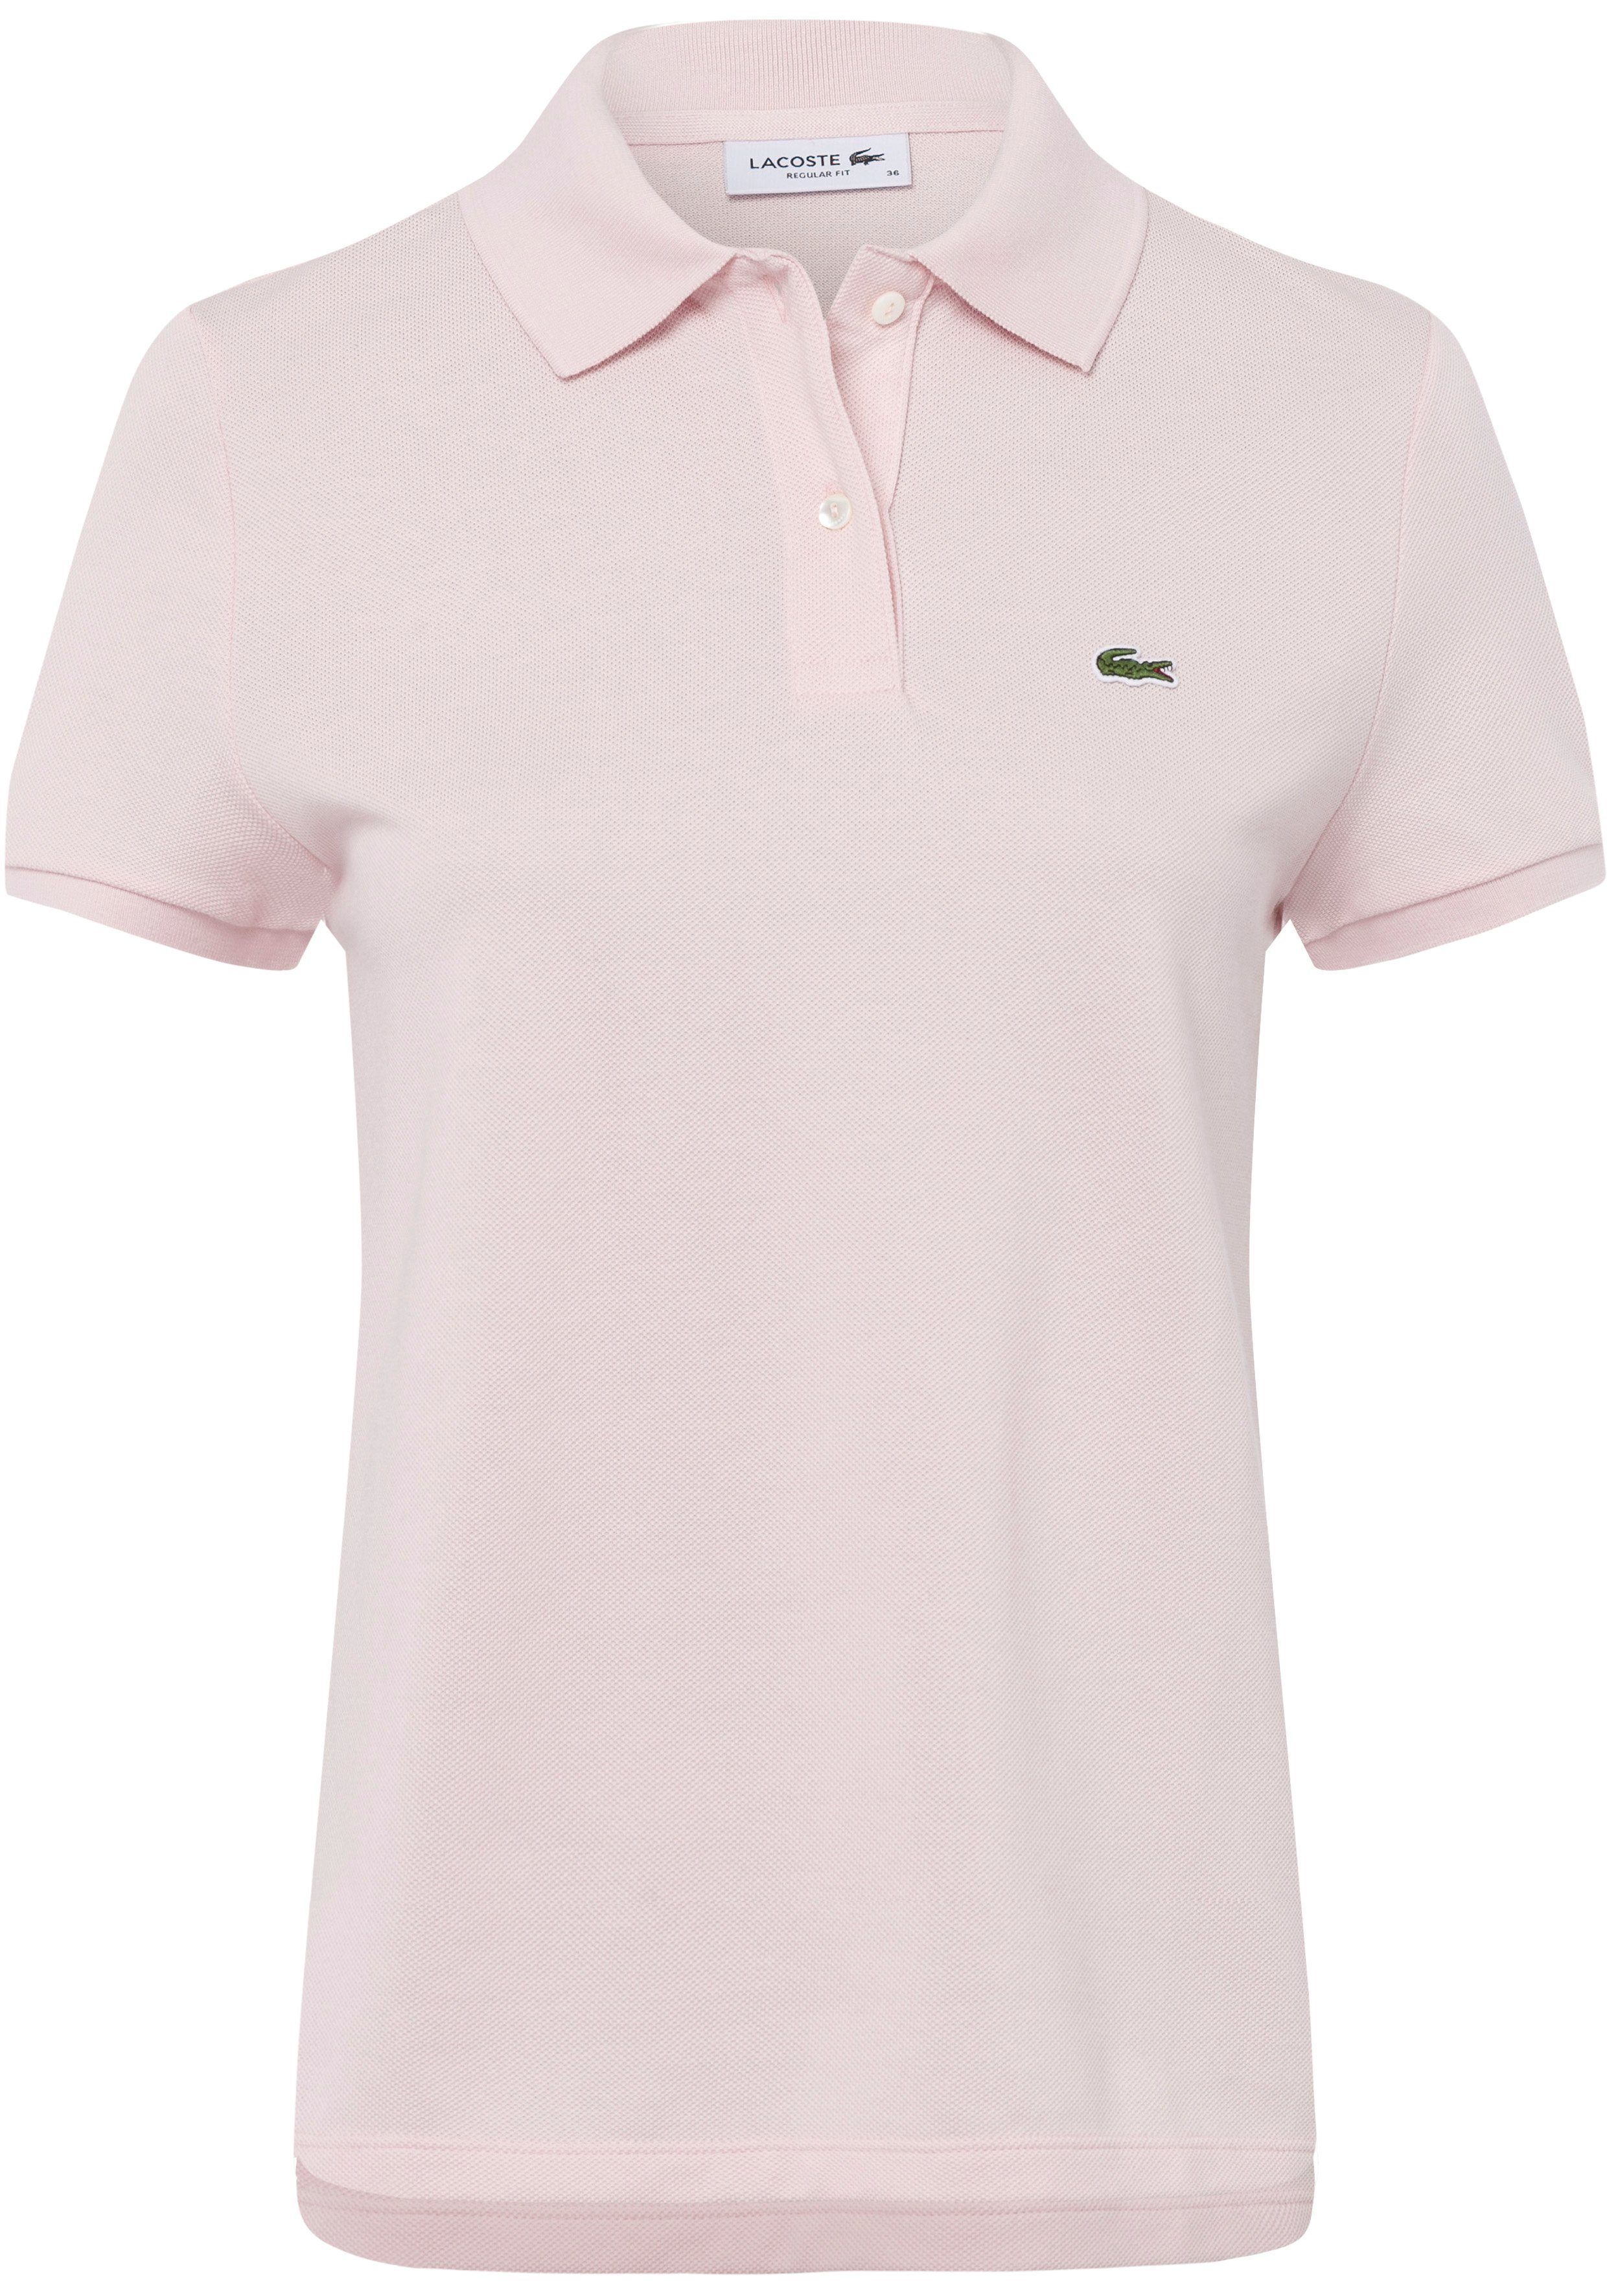 Lacoste-Logo-Patch Brust der Lacoste mit rosa Poloshirt auf